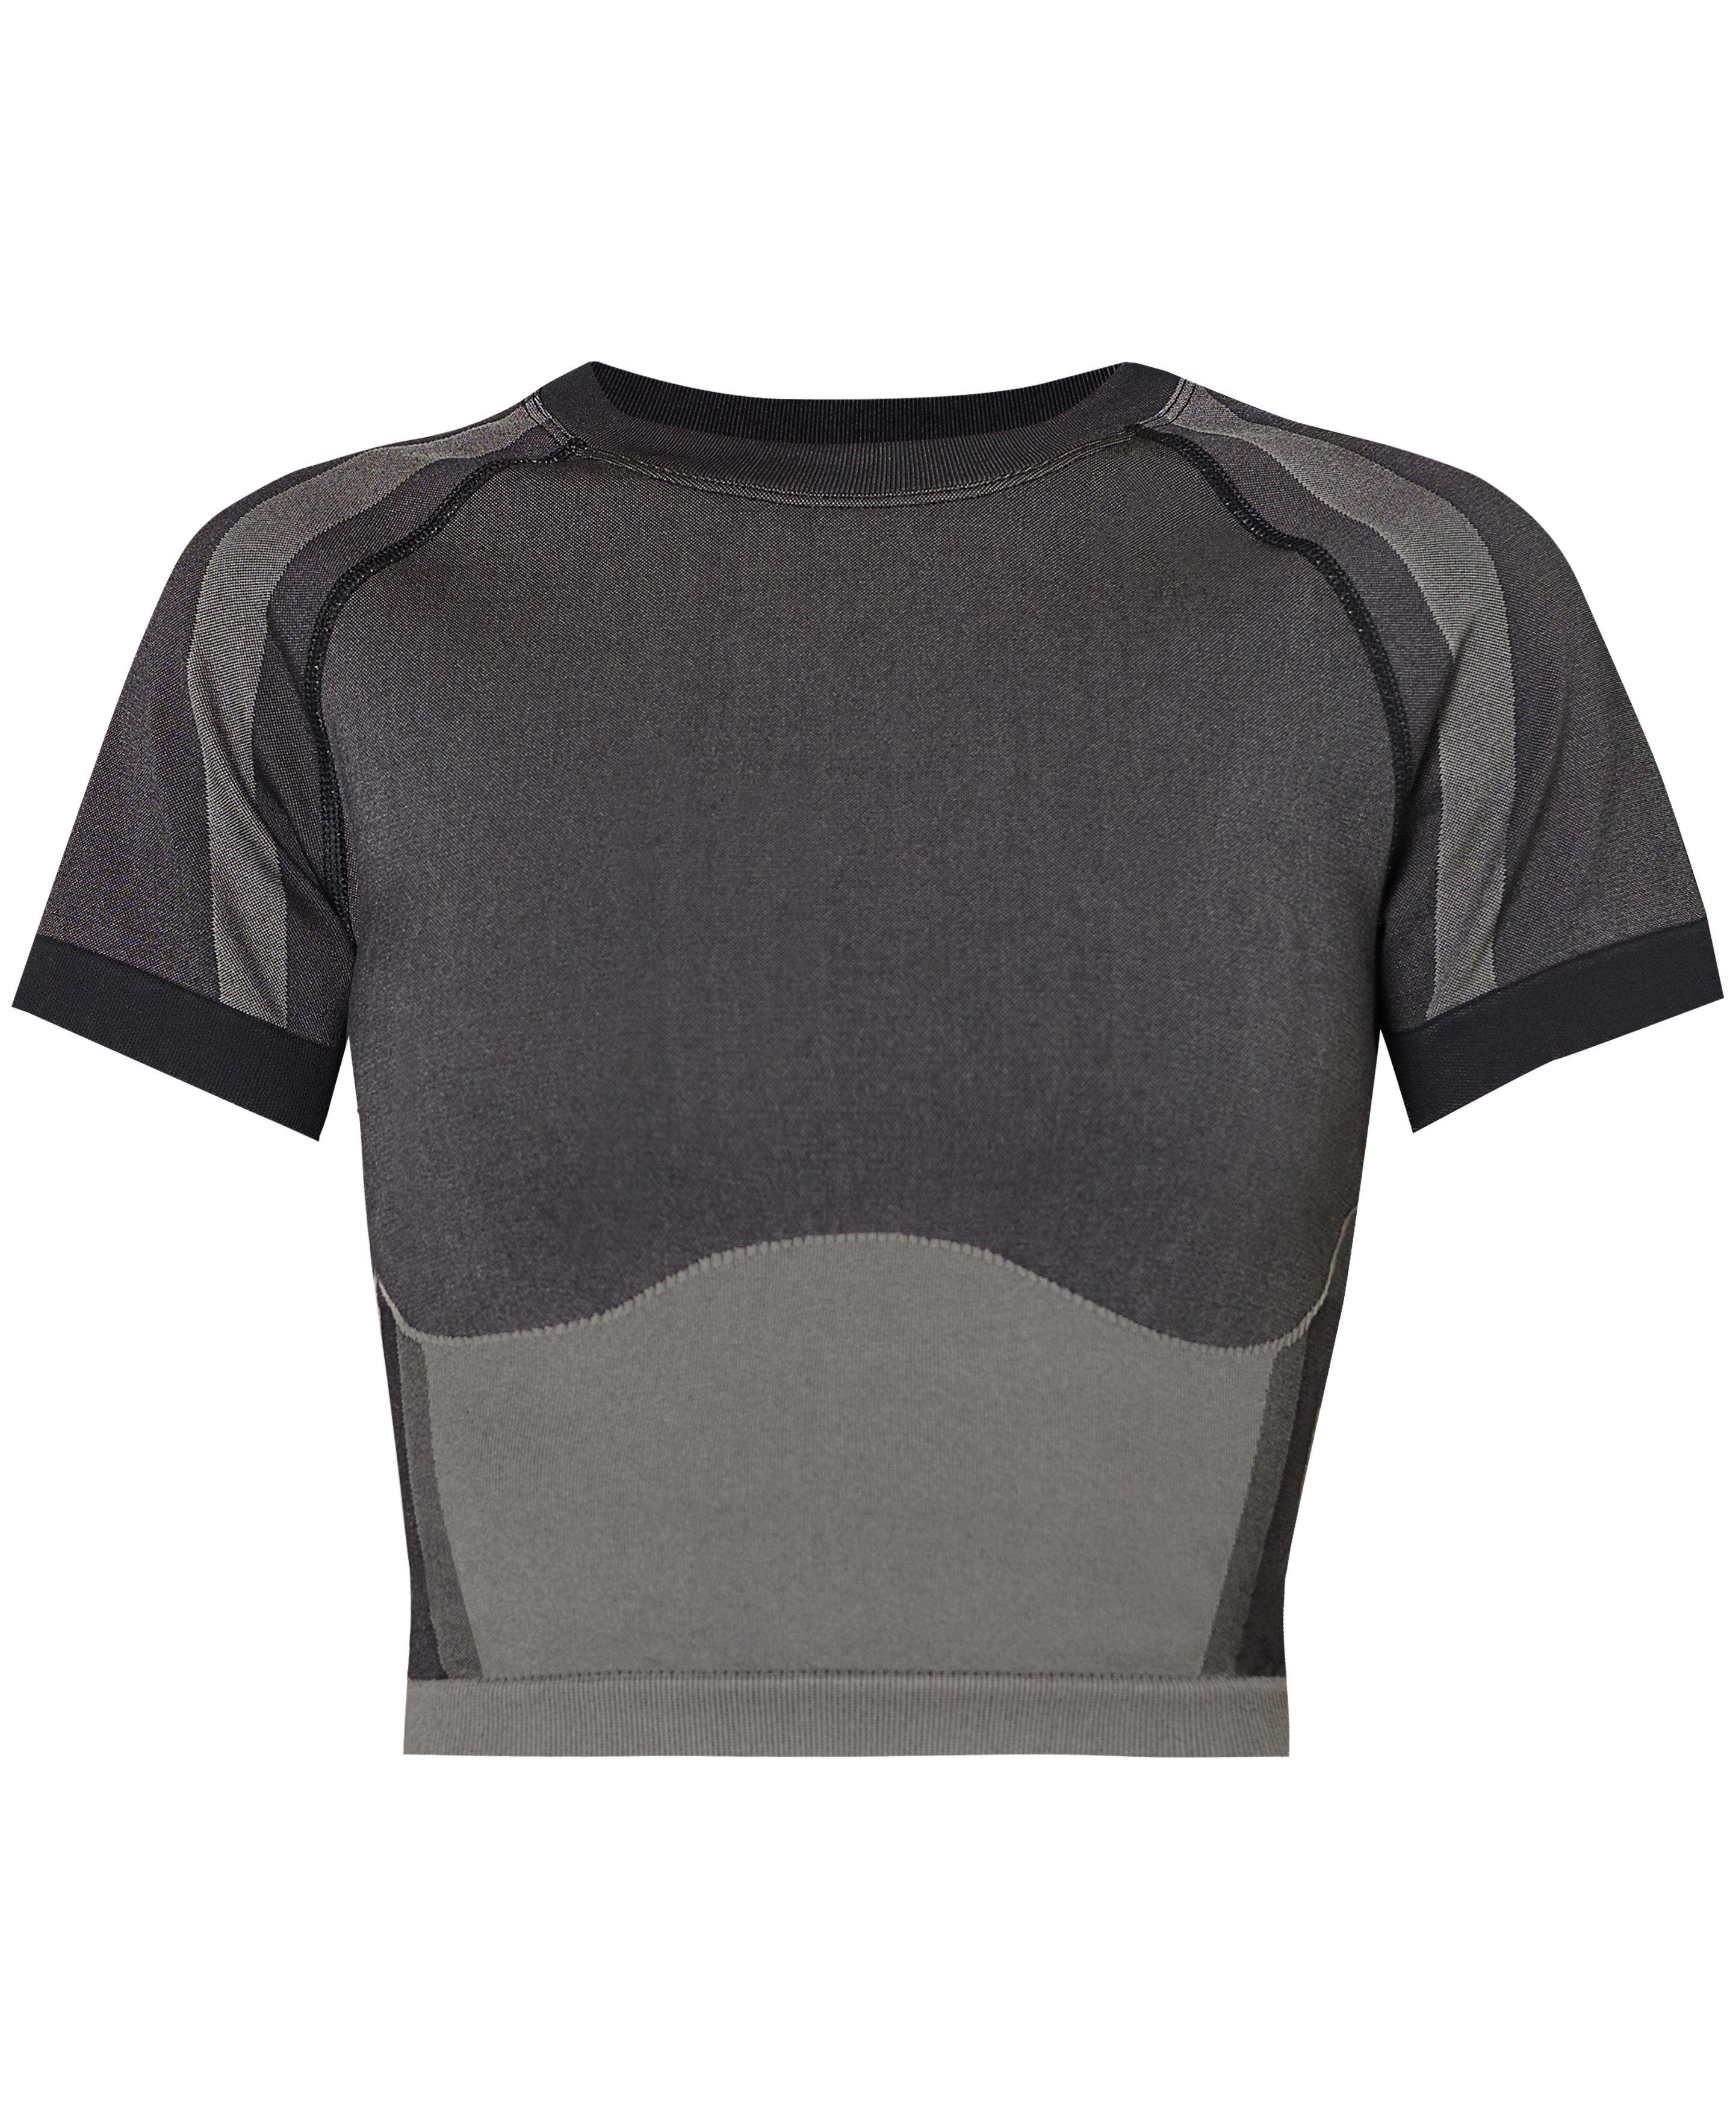 Silhouette Sculpt Seamless Short Sleeve Top - Black, Women's T-Shirts